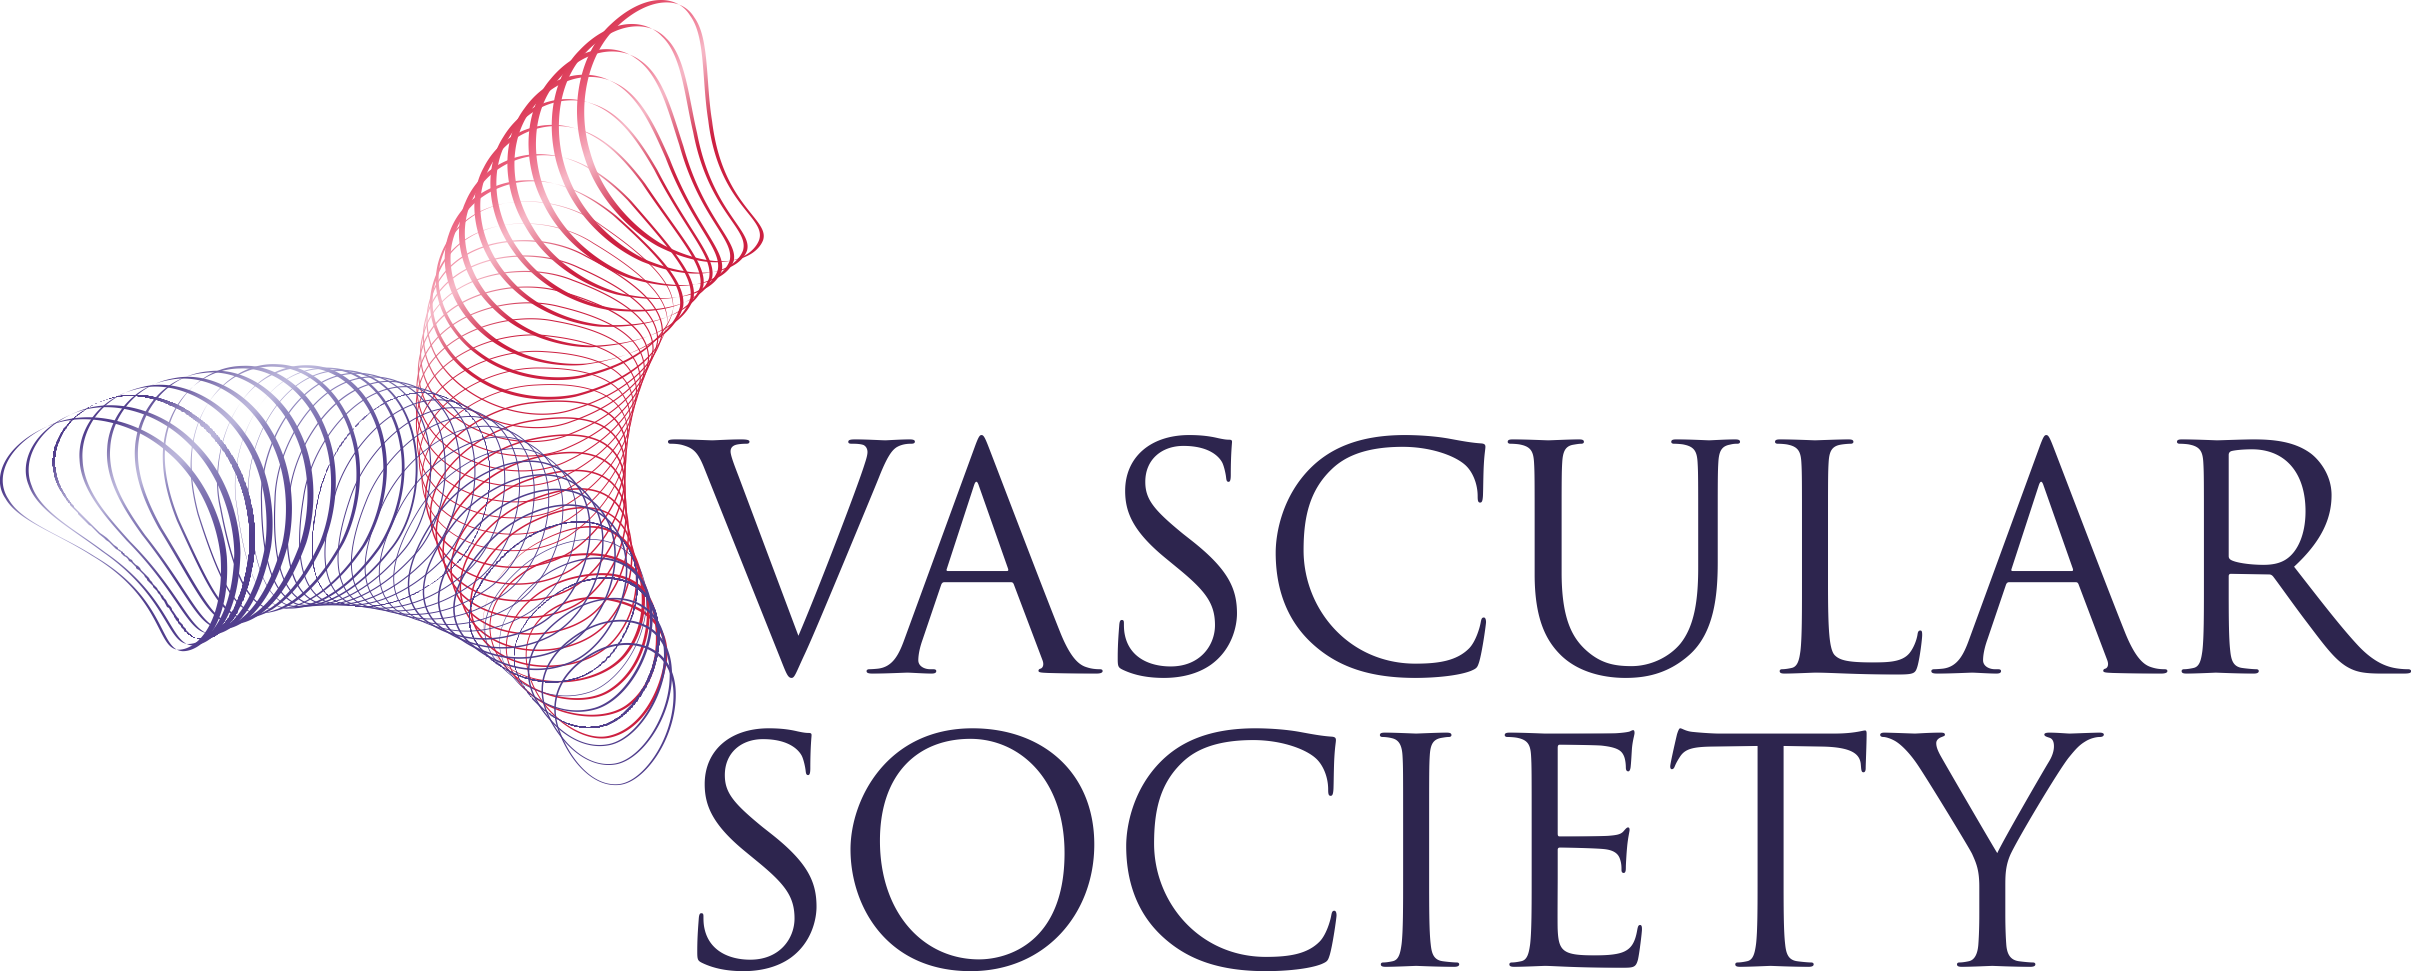 Vascualr Society logo_CMYK_